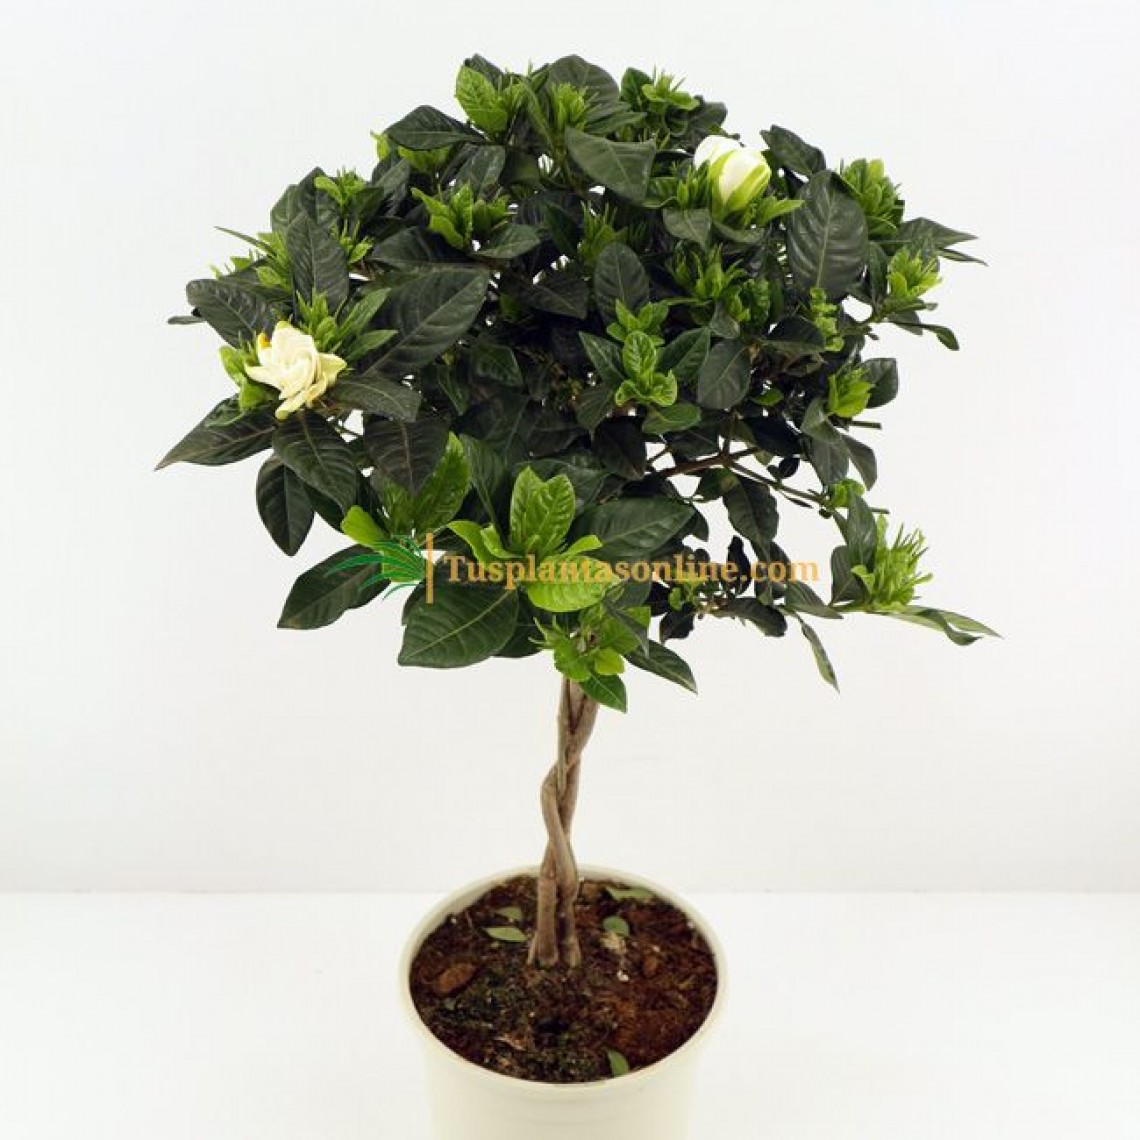 Gardenia jasminoides M-20 - Tus plantas online